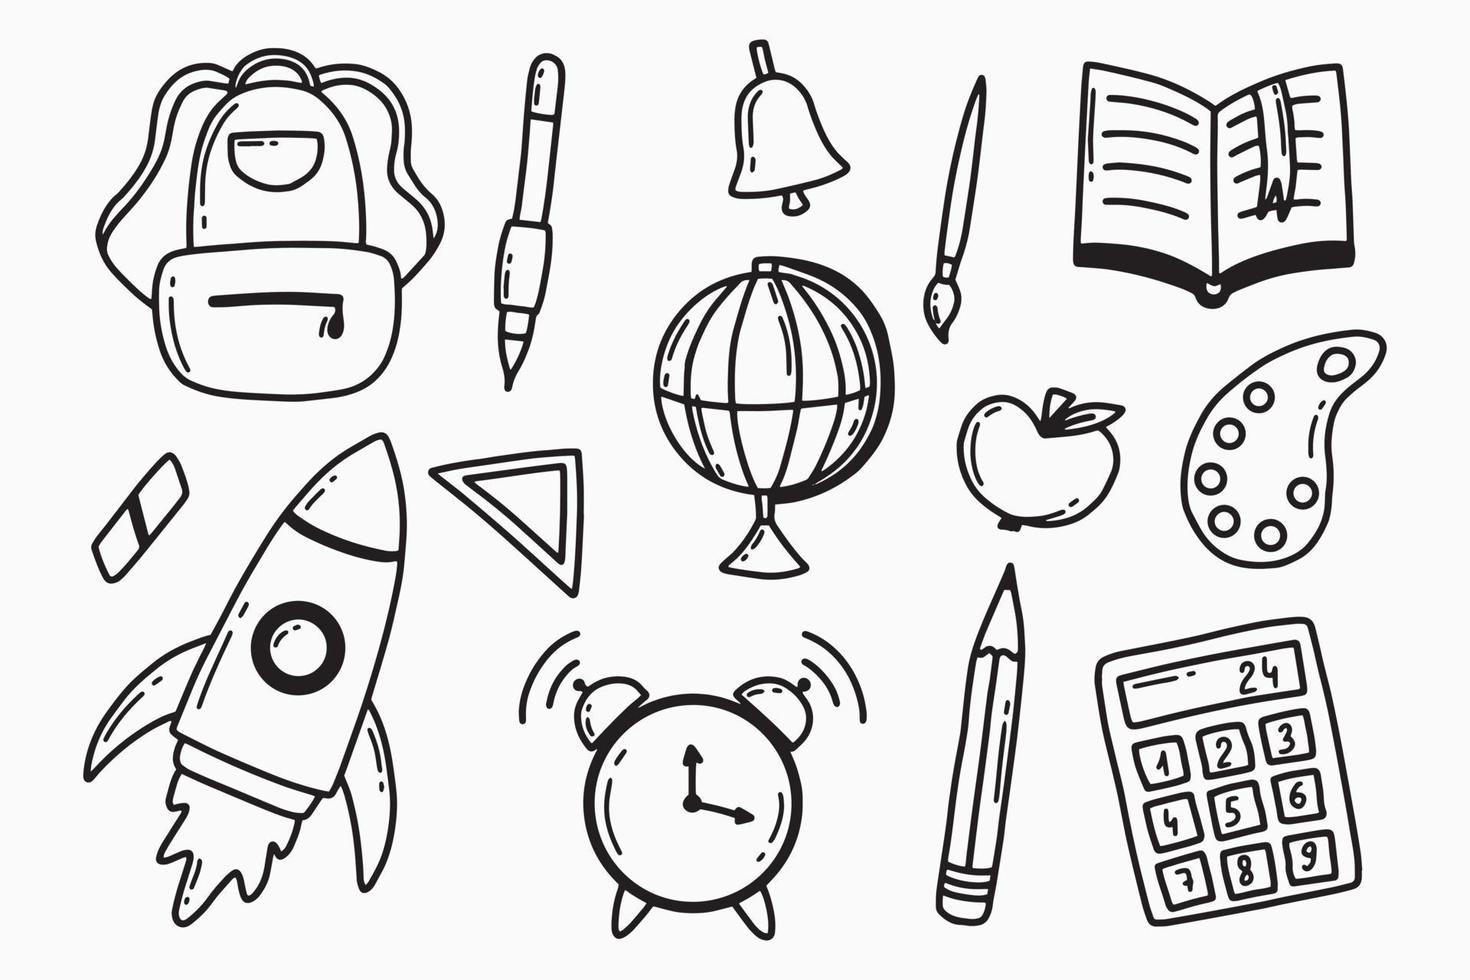 terug naar school set. doodle stijl. schoolelementen instellen. globe, rugzak, pen, rekenmachine, wekker, potlood. vectorillustratie. vector